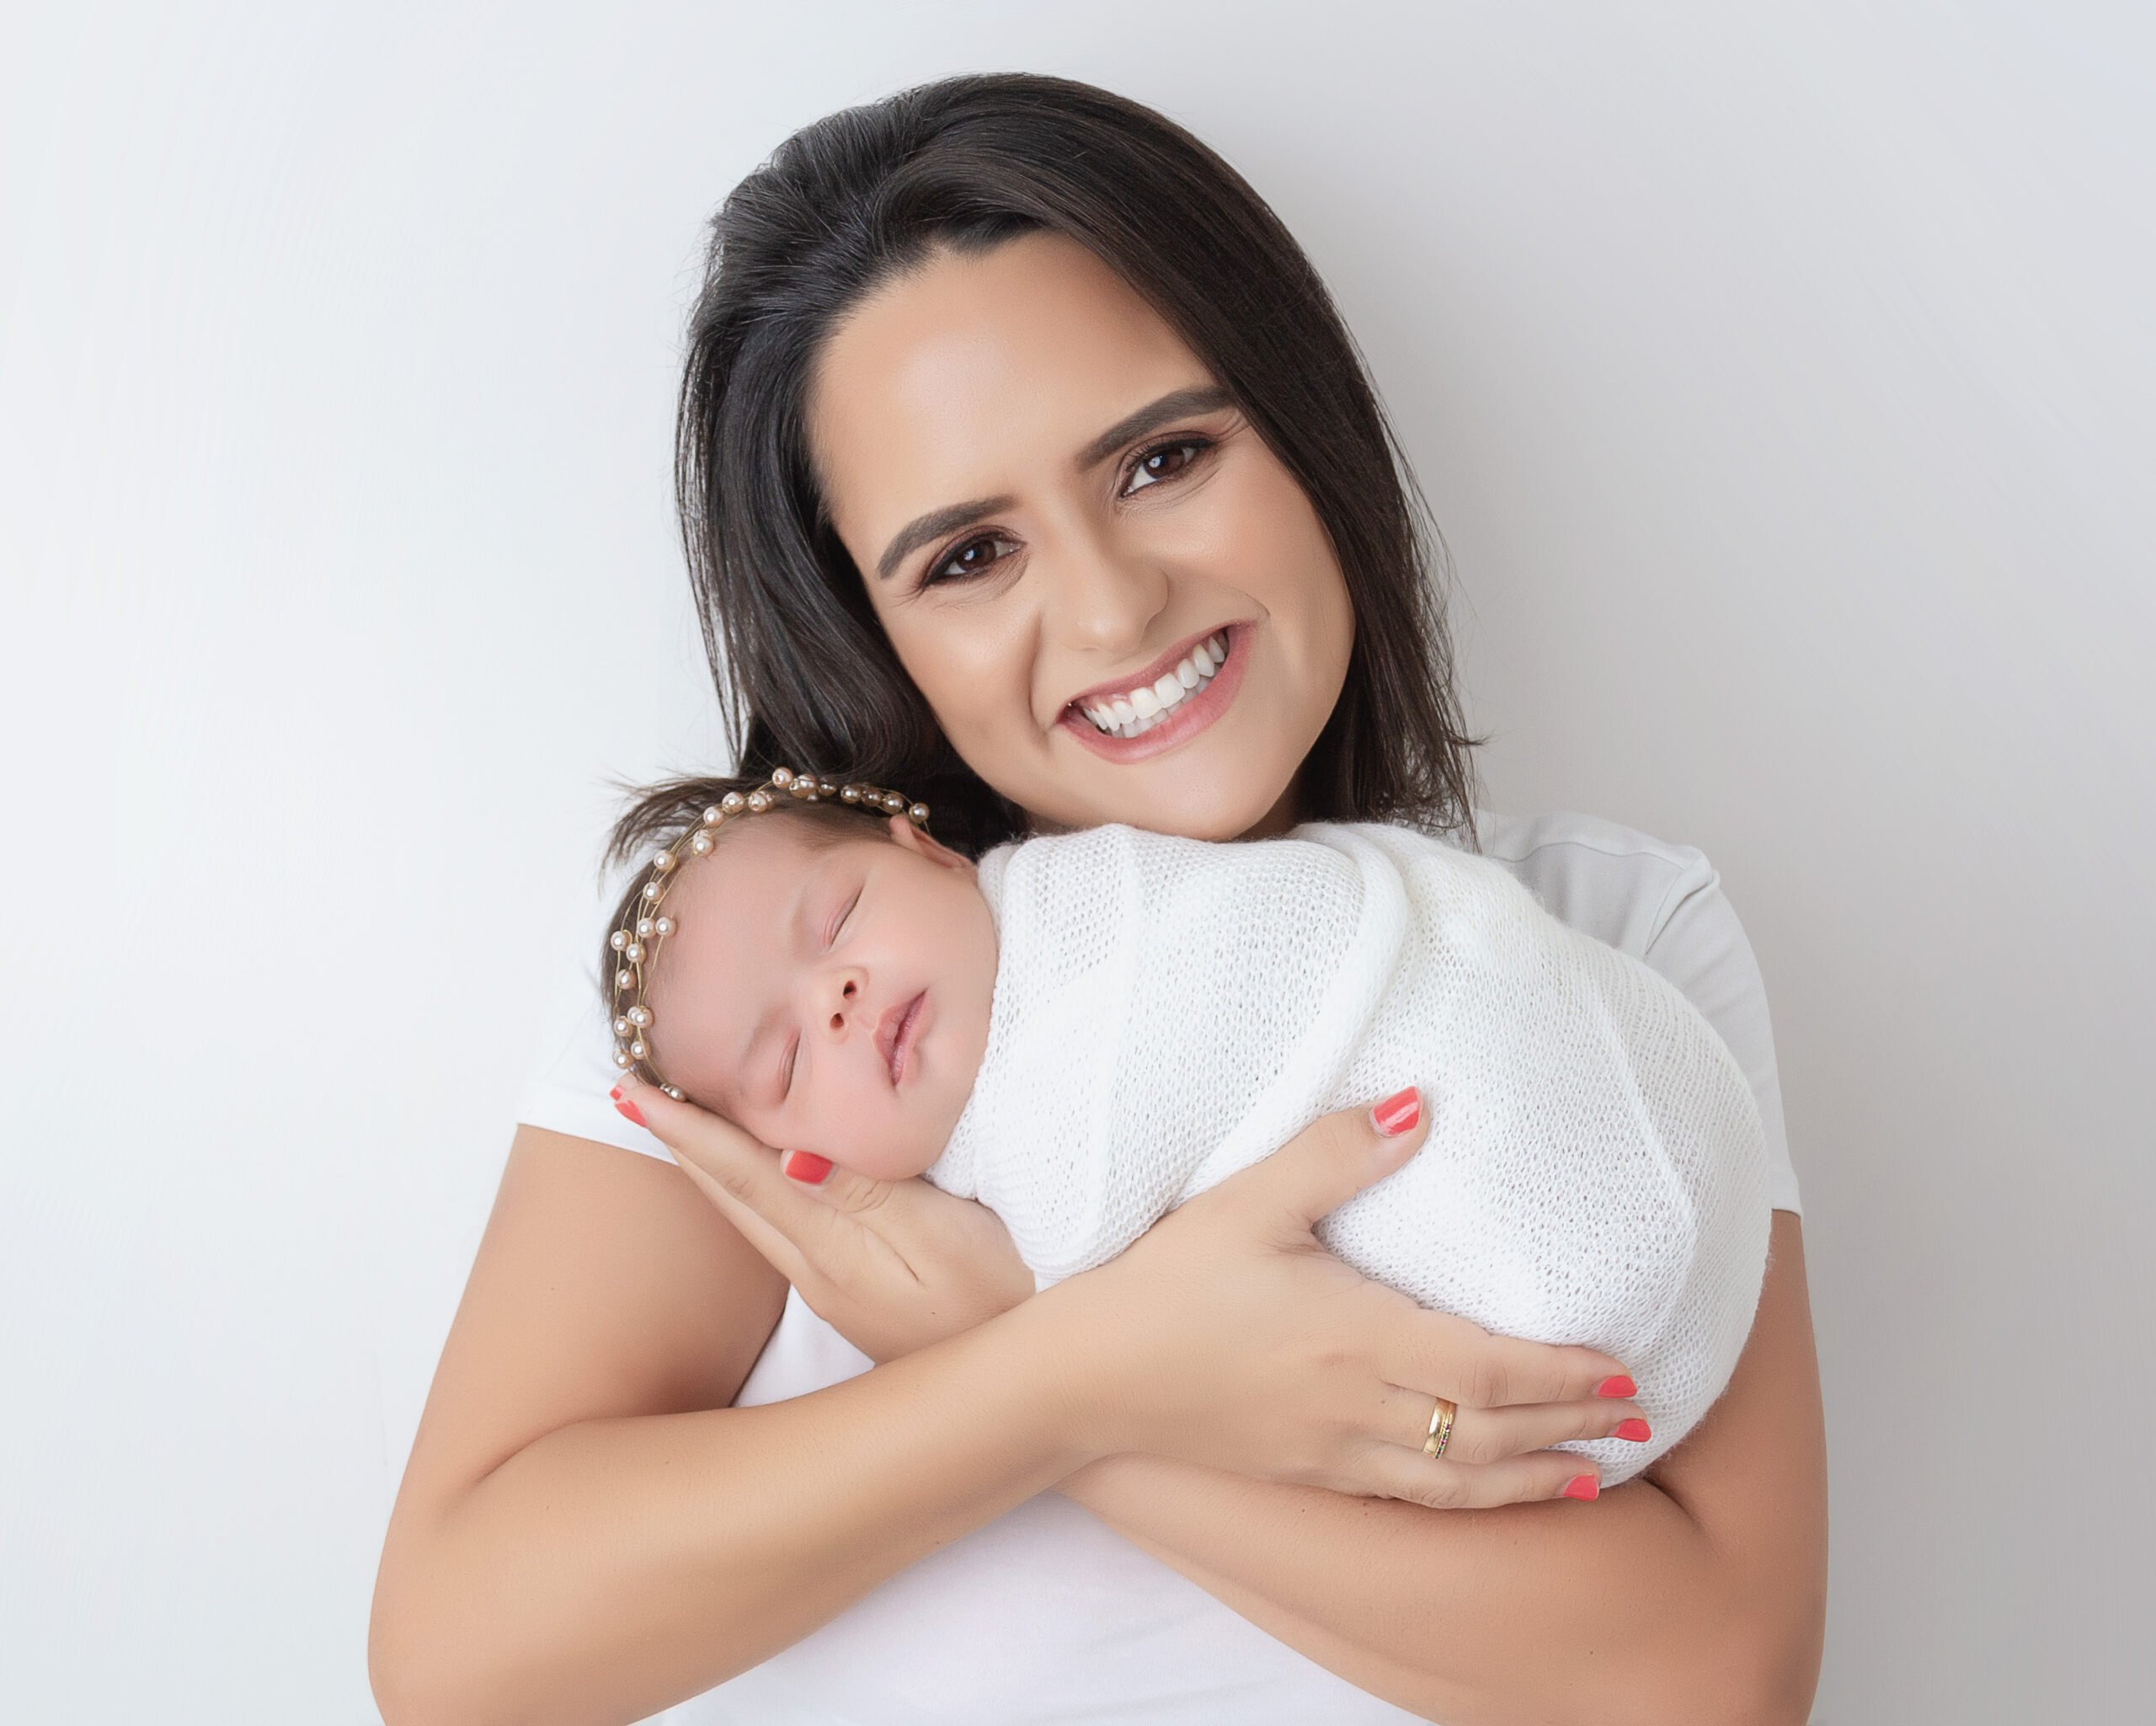 “Fui promovida grávida”: mães contam como se tornaram símbolo de uma nova era nas empresas